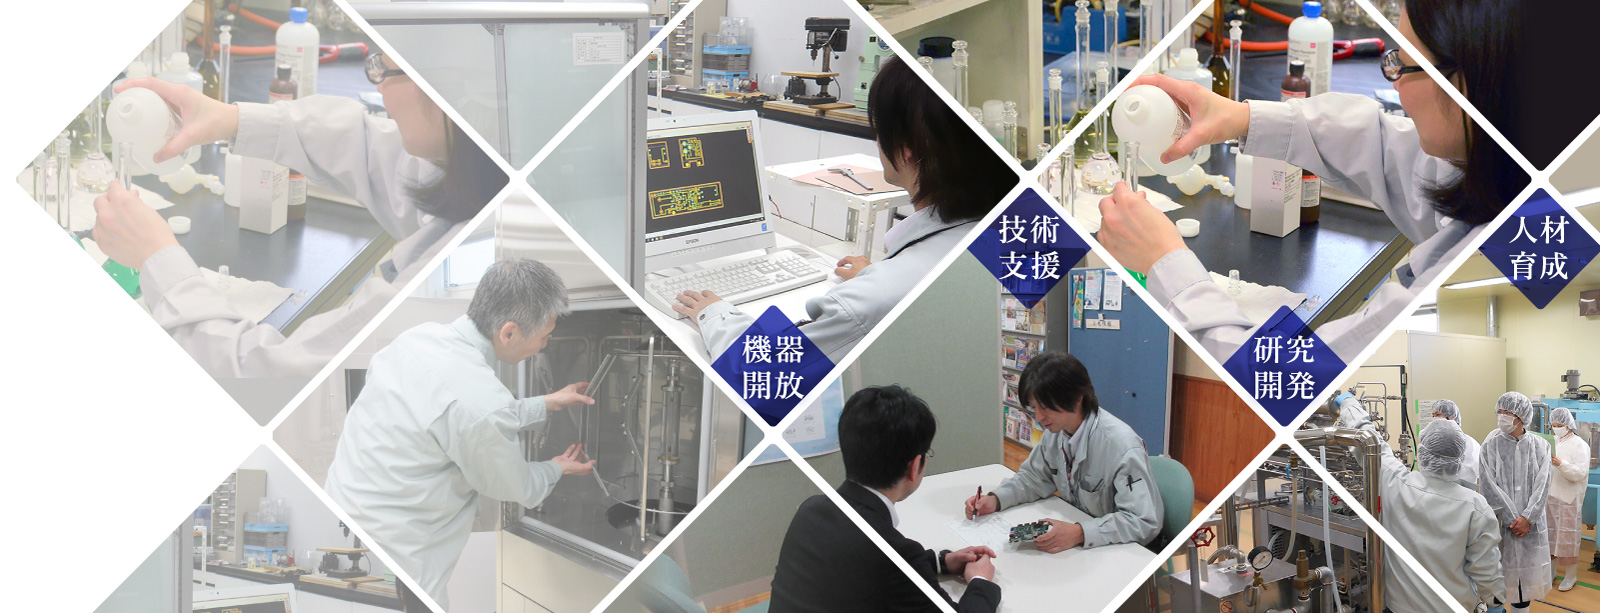 鳥取県産業技術センターイメージ